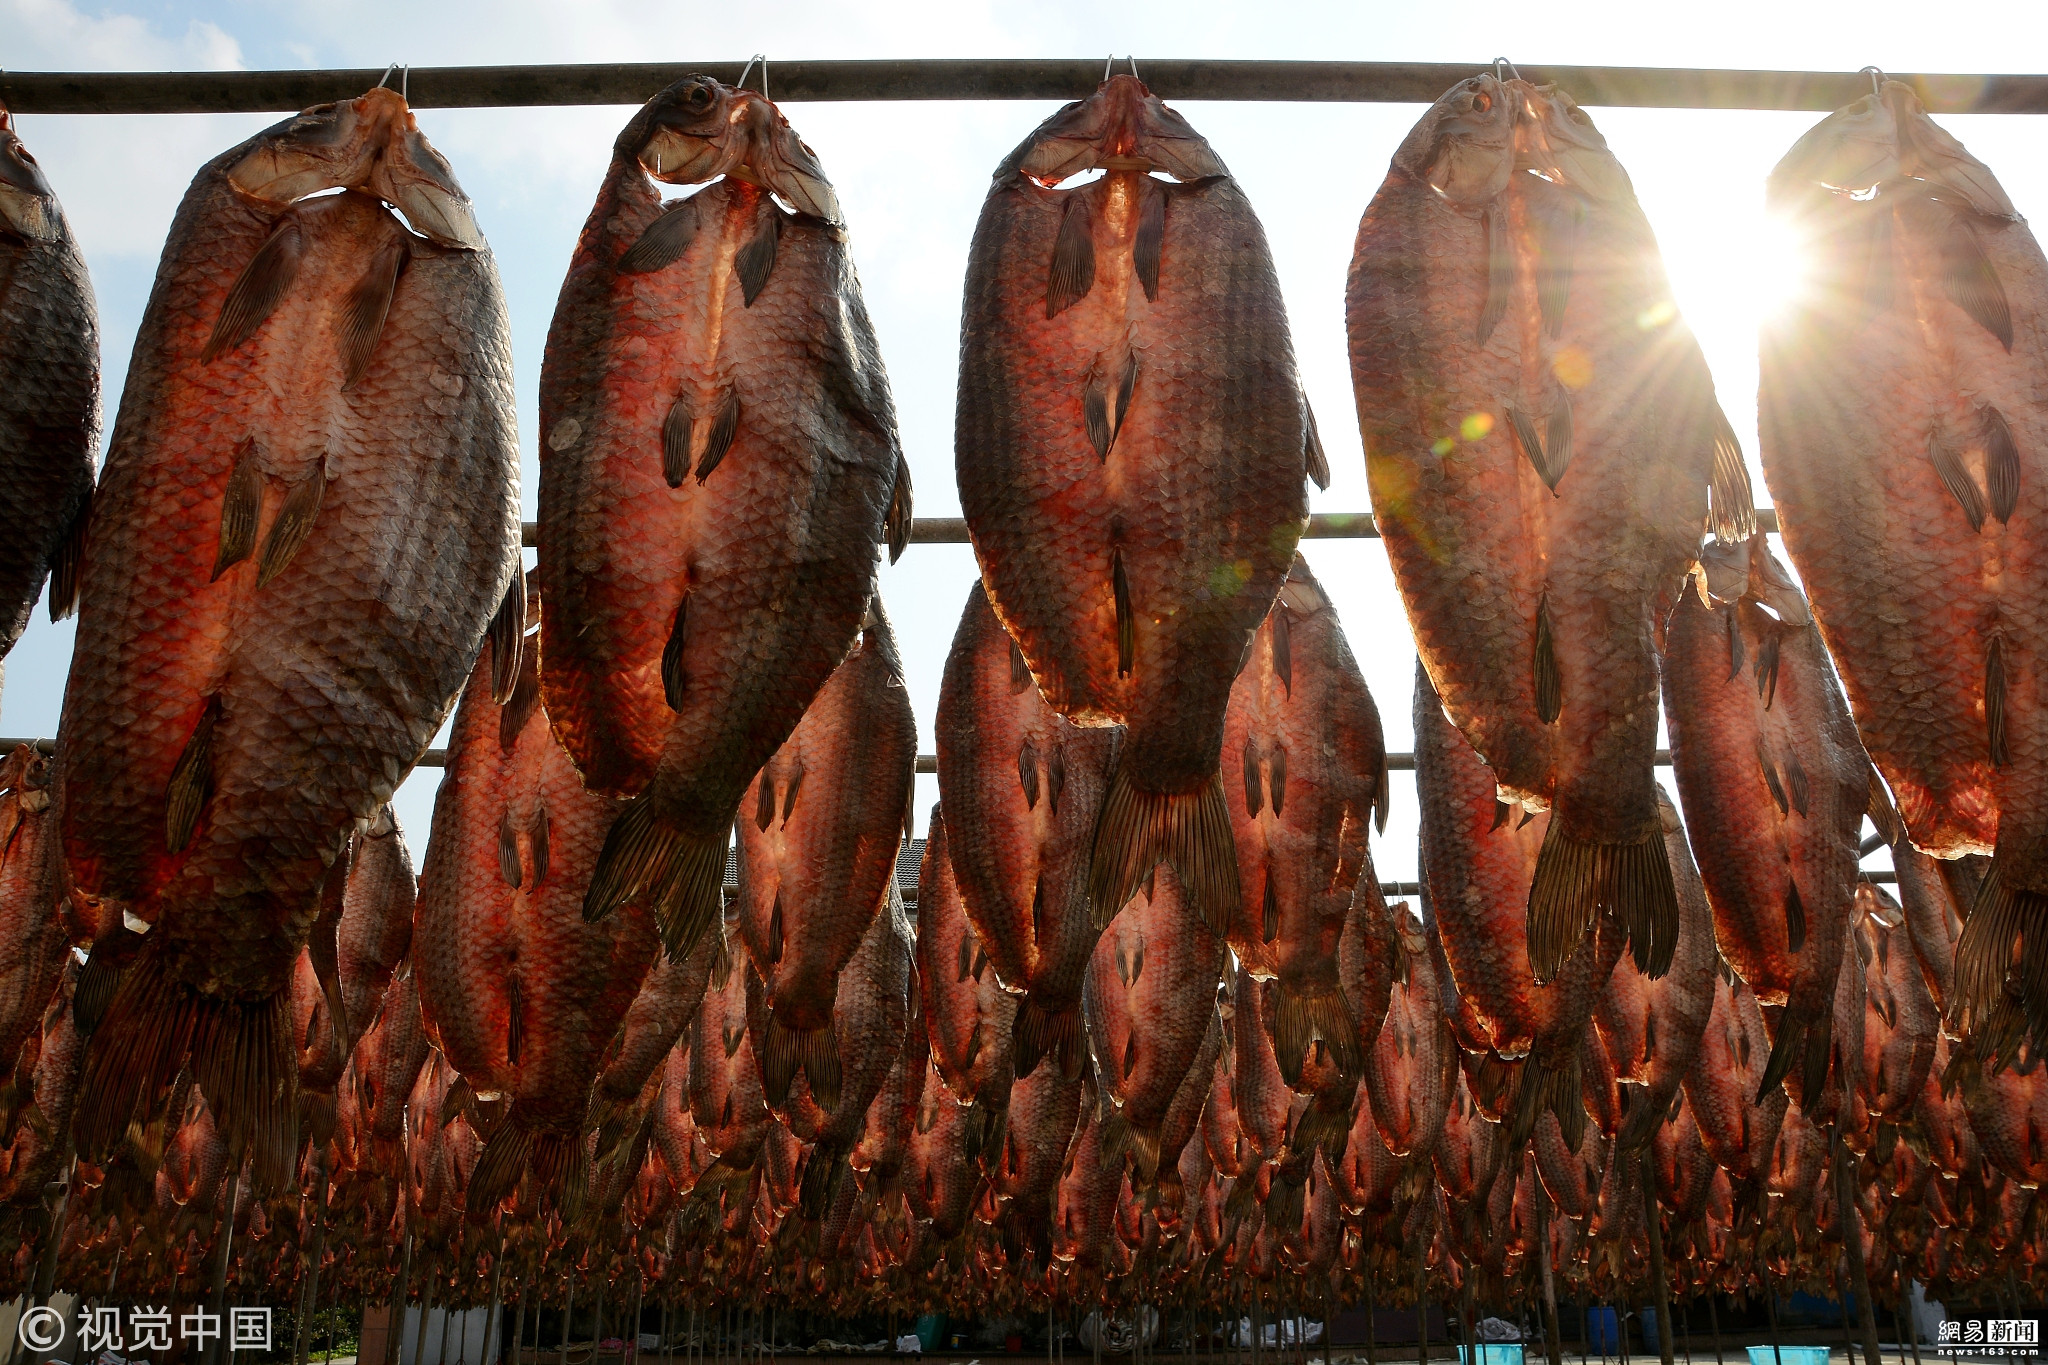 无头咸鱼干 咸鱼干 黄花鱼干 海鲜干货 500g 有价有量 货源充-阿里巴巴